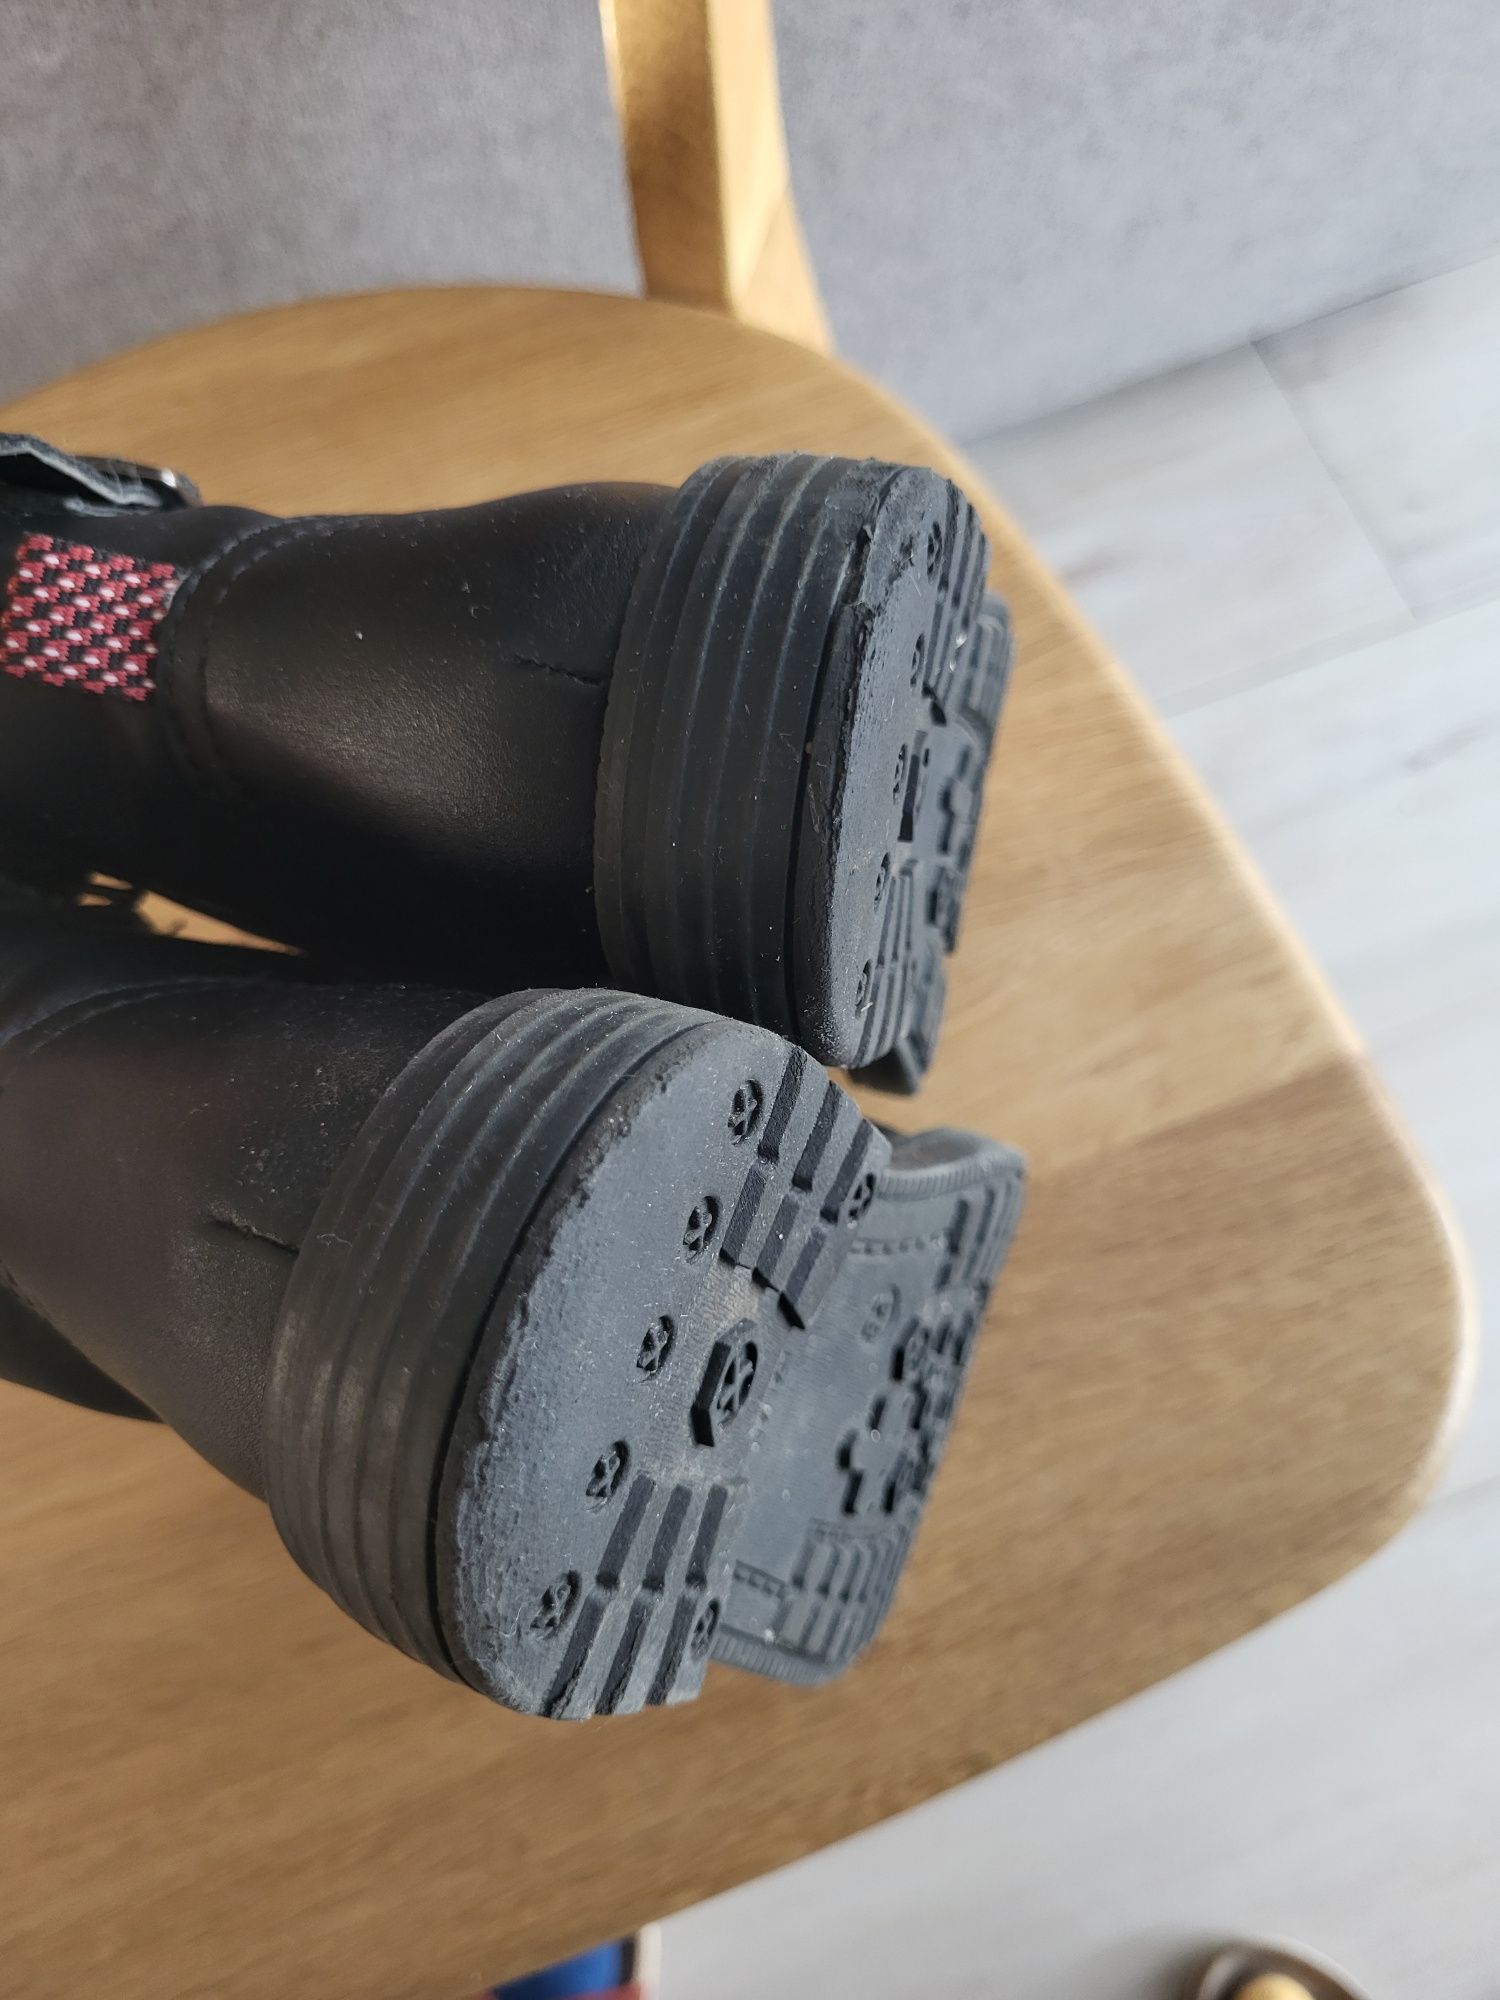 Geox kozaki sztyblety buty zimowe ocieplane skórzane rozm28 wkładka18